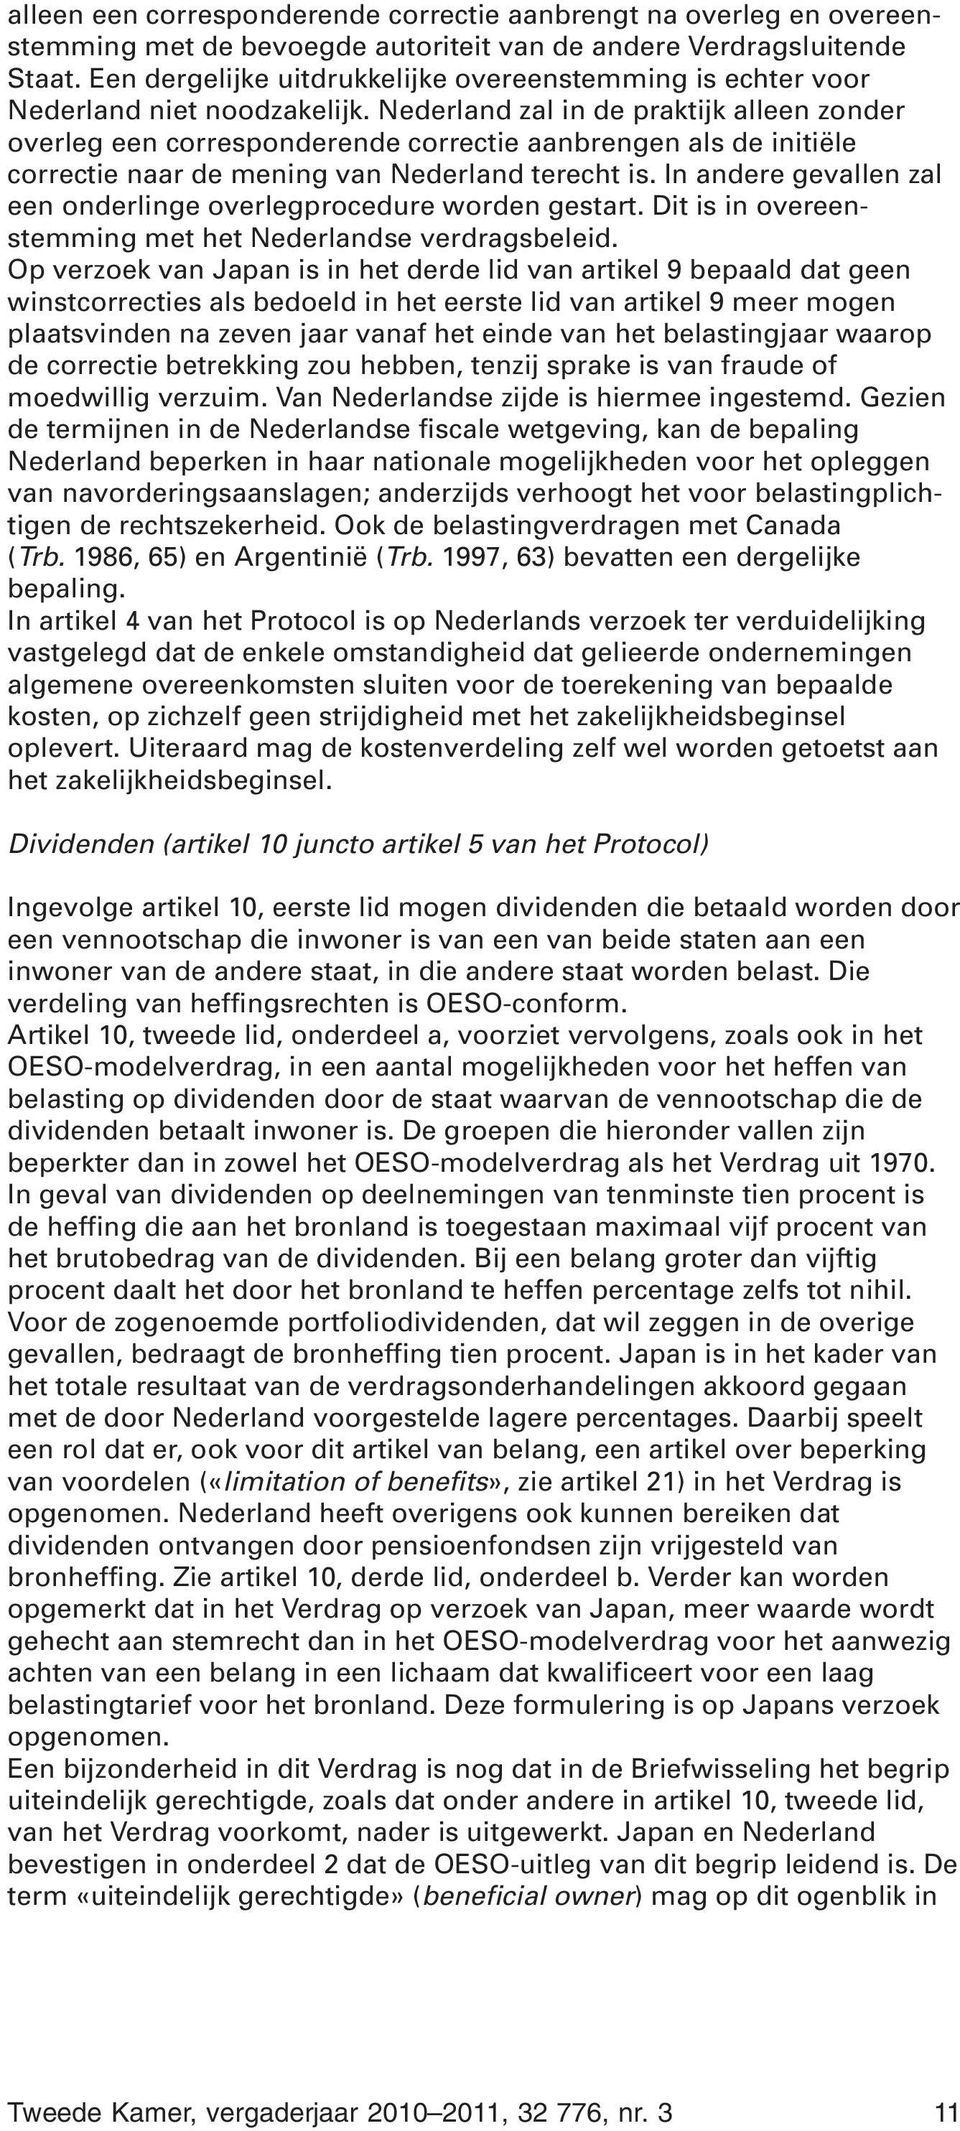 Nederland zal in de praktijk alleen zonder overleg een corresponderende correctie aanbrengen als de initiële correctie naar de mening van Nederland terecht is.